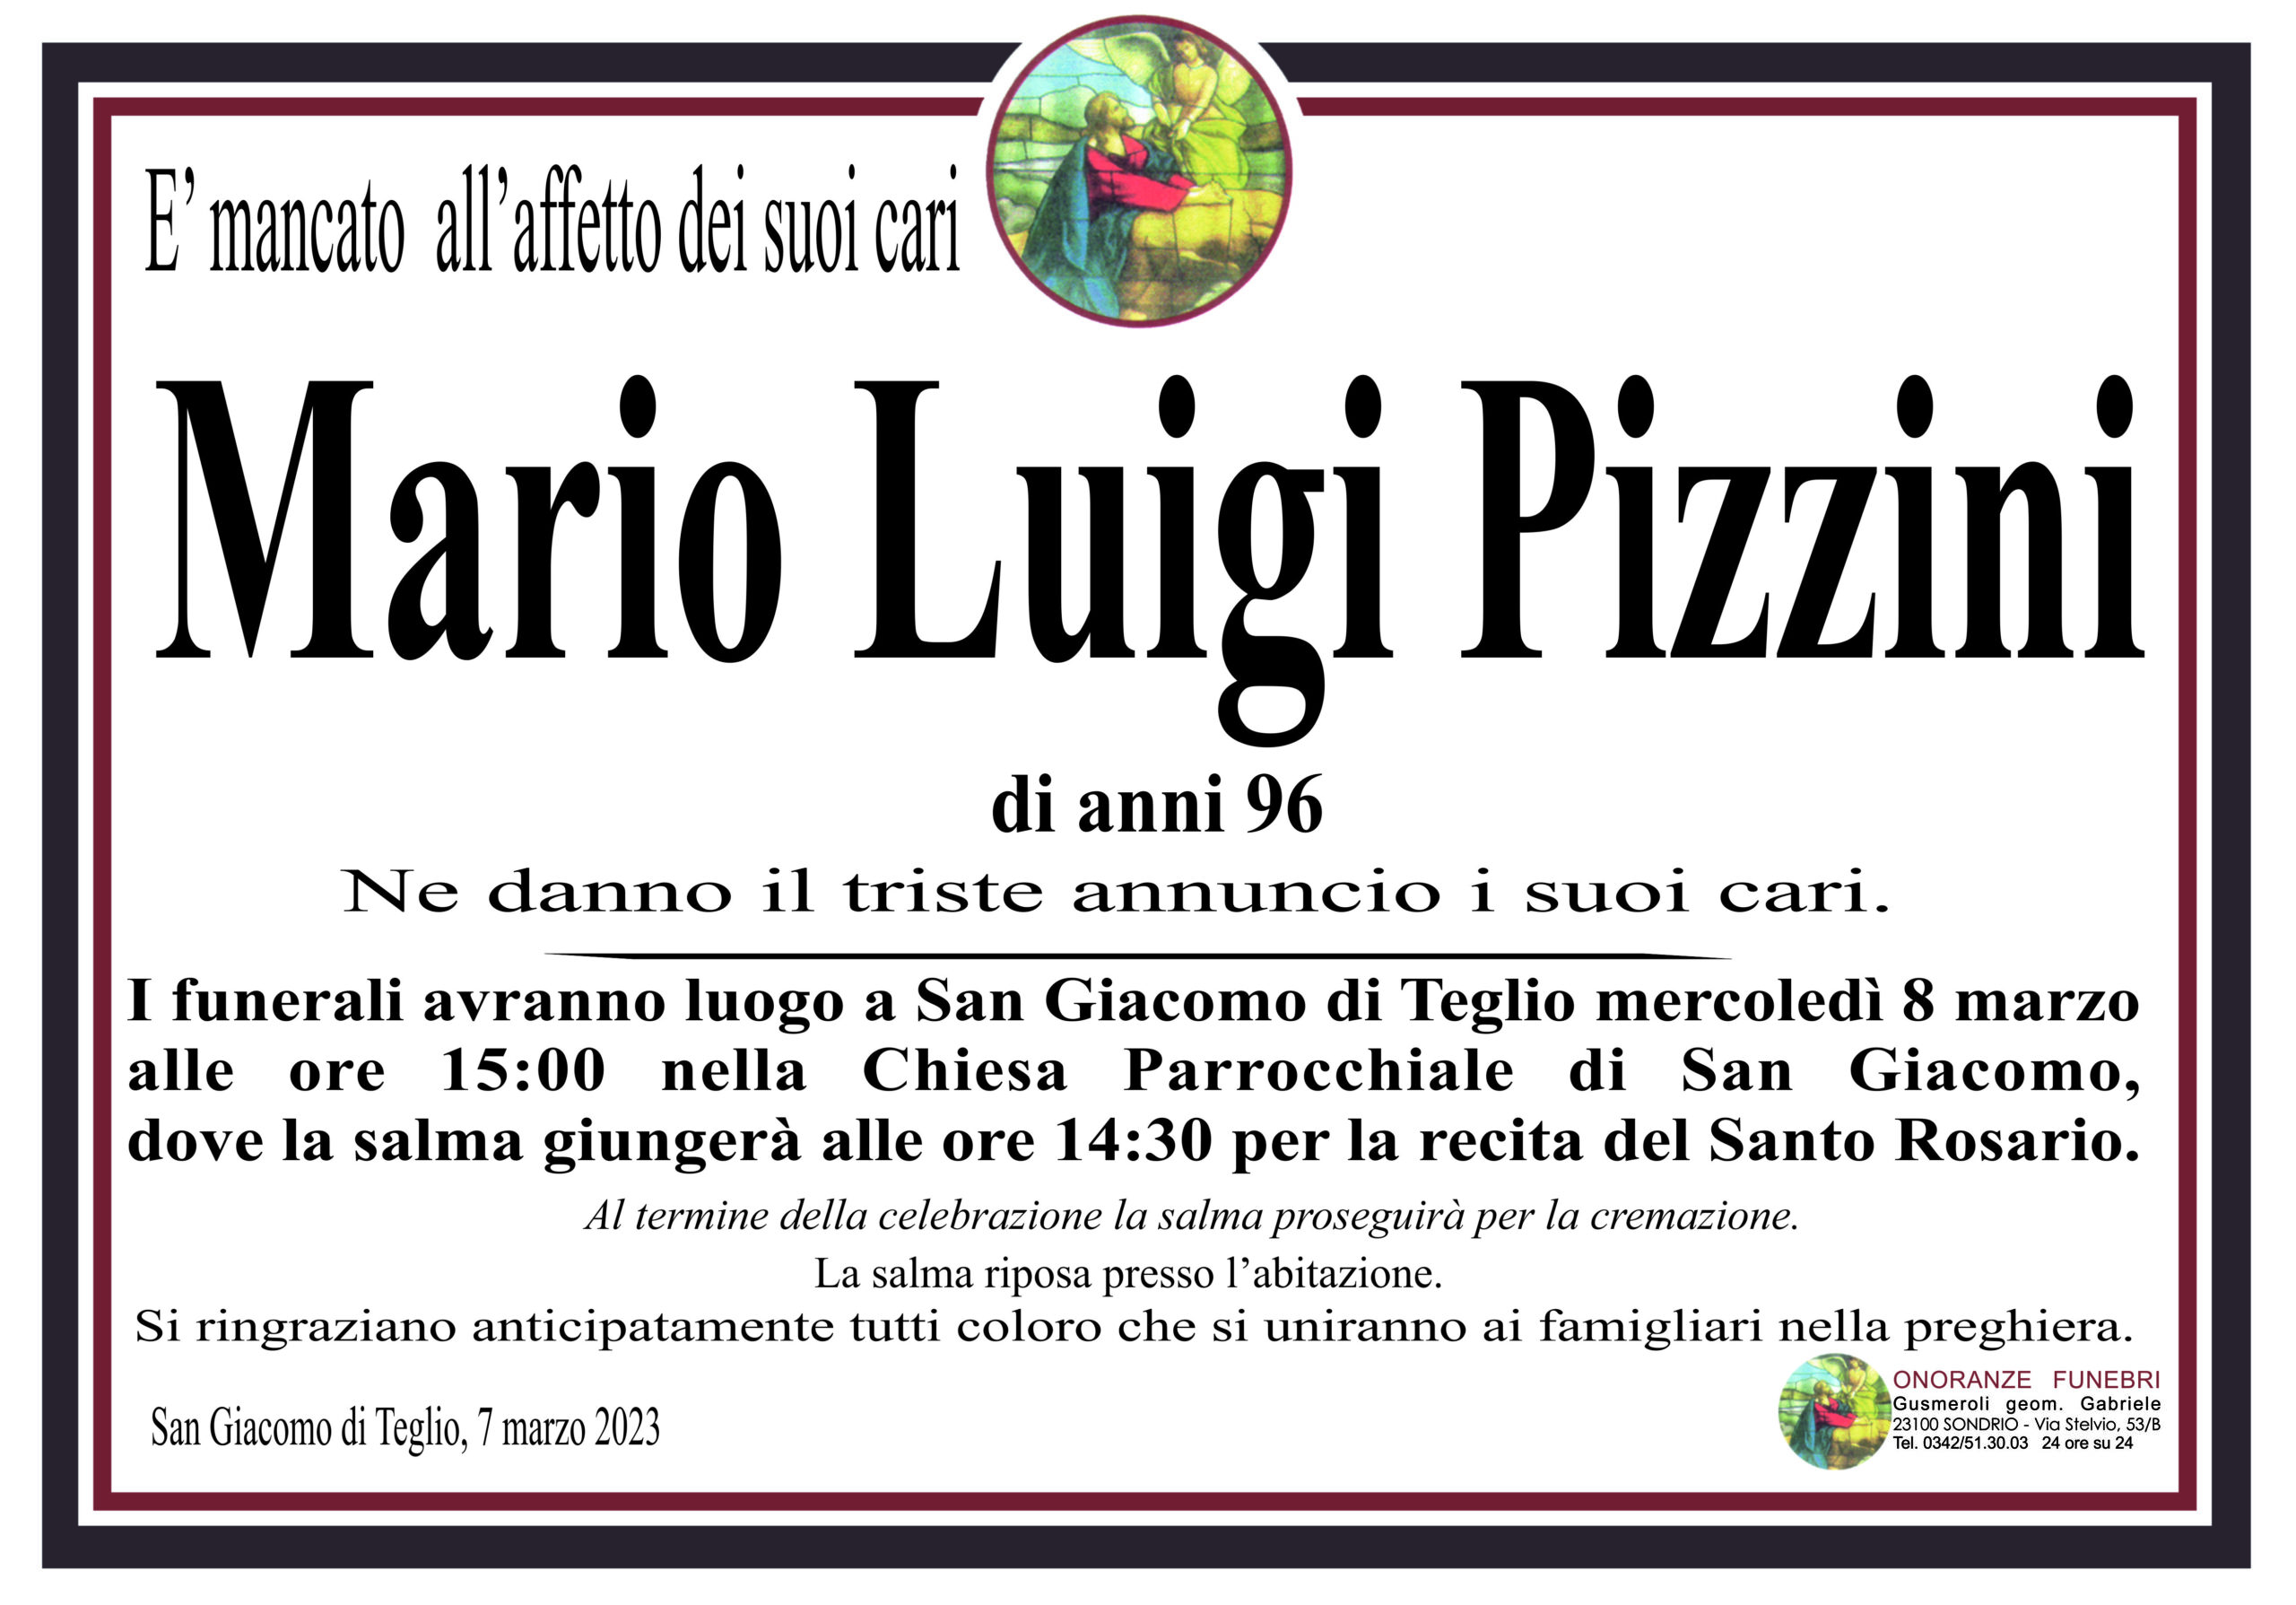 Pizzini Mario Luigi